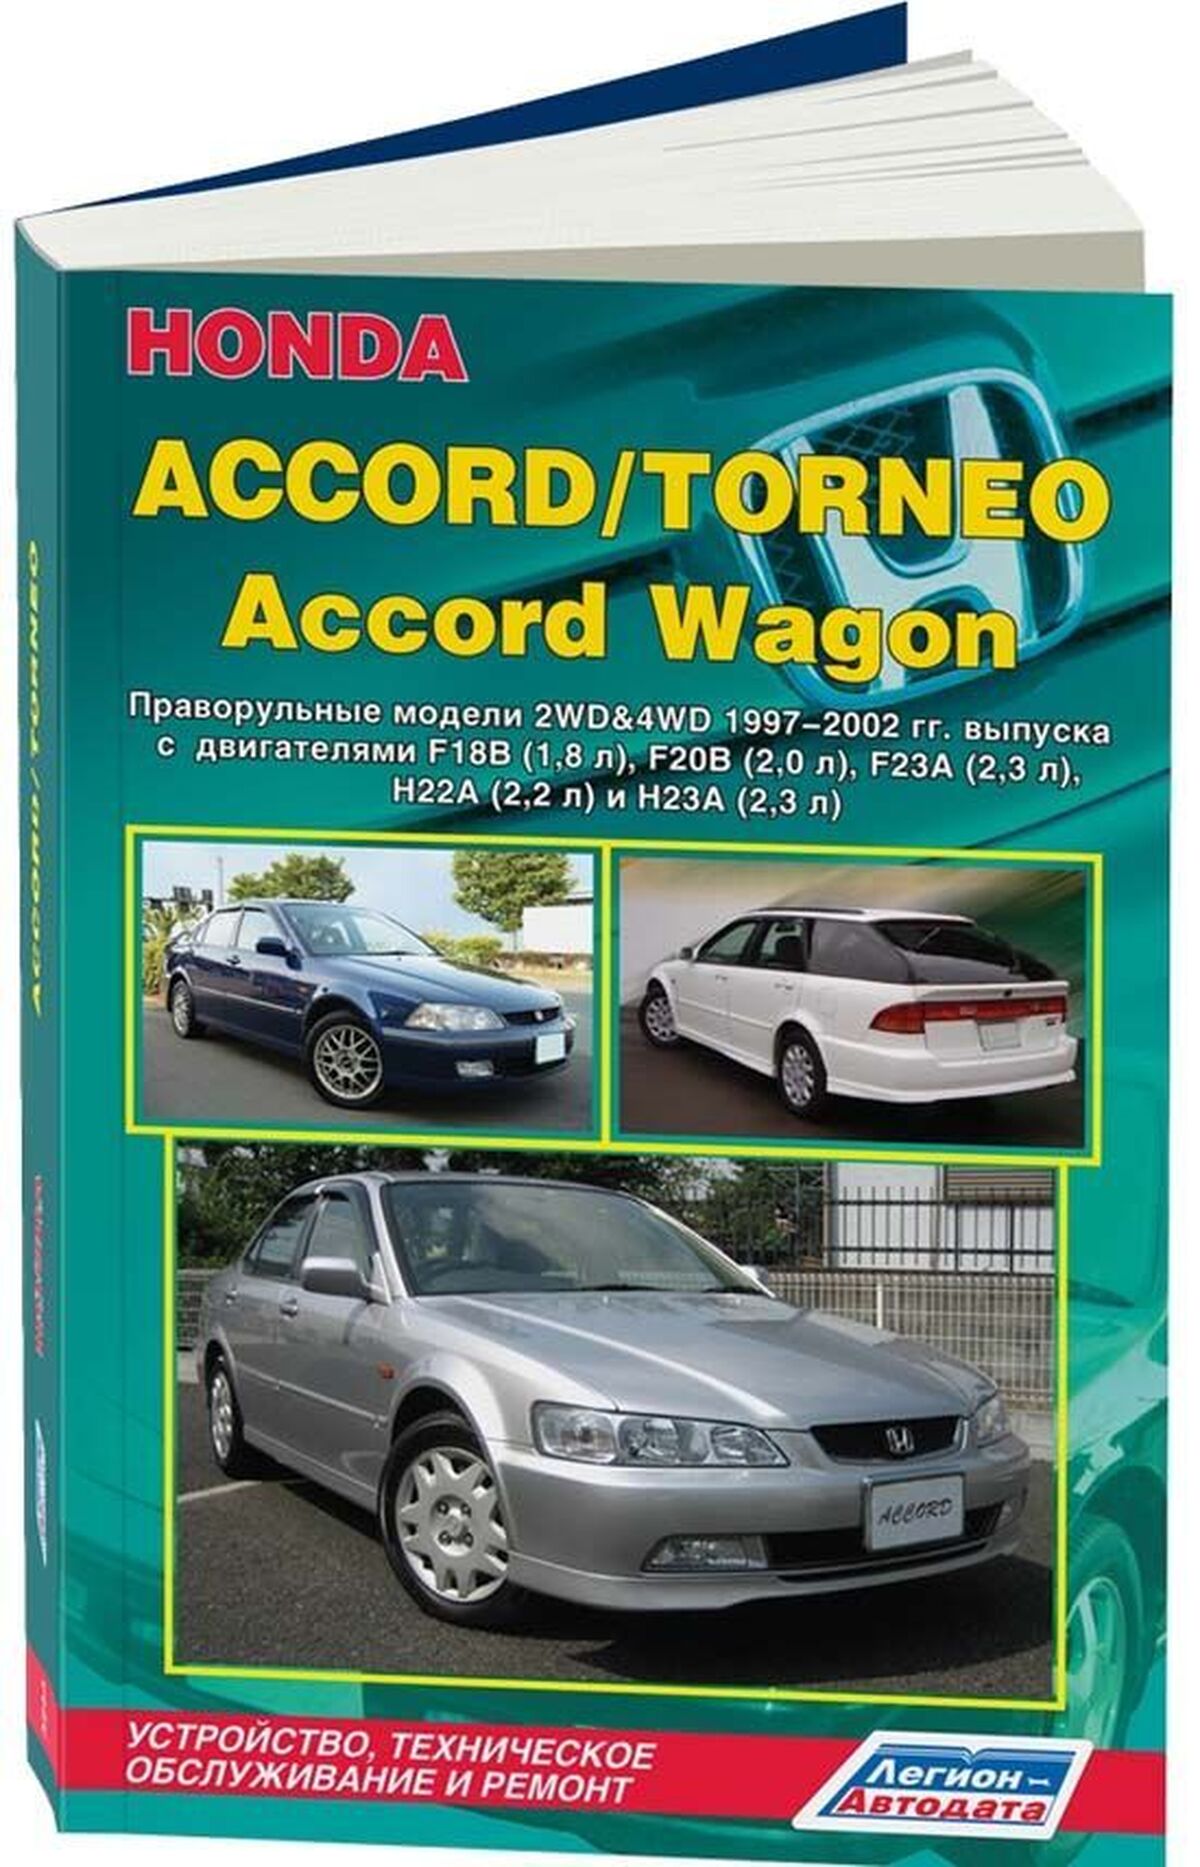 Книга: HONDA ACCORD / TORNEO / ACCORD WAGON (б) 1997-2002 г.в., рем., экспл., то | Легион-Aвтодата